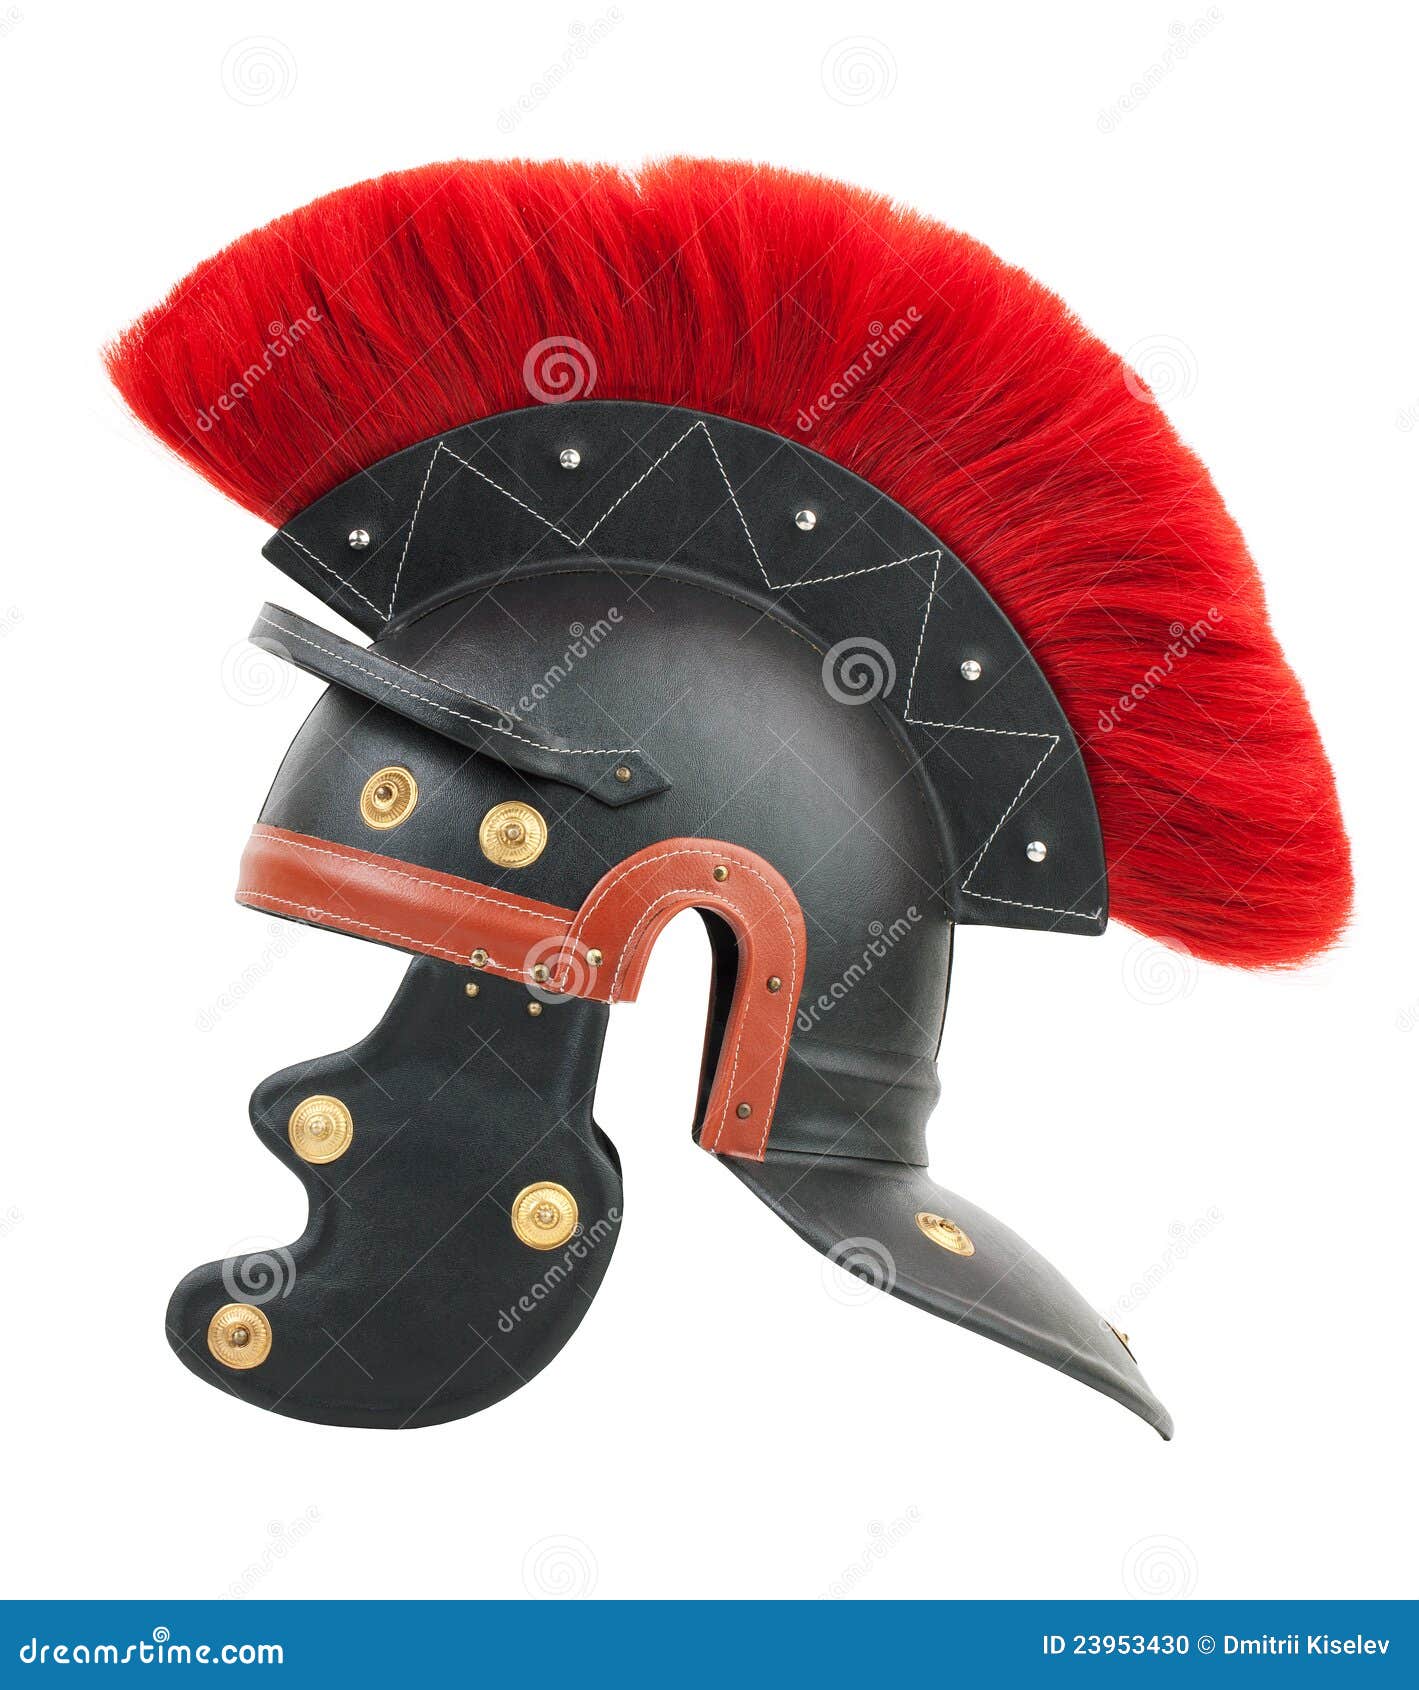 mini roman centurion helmet